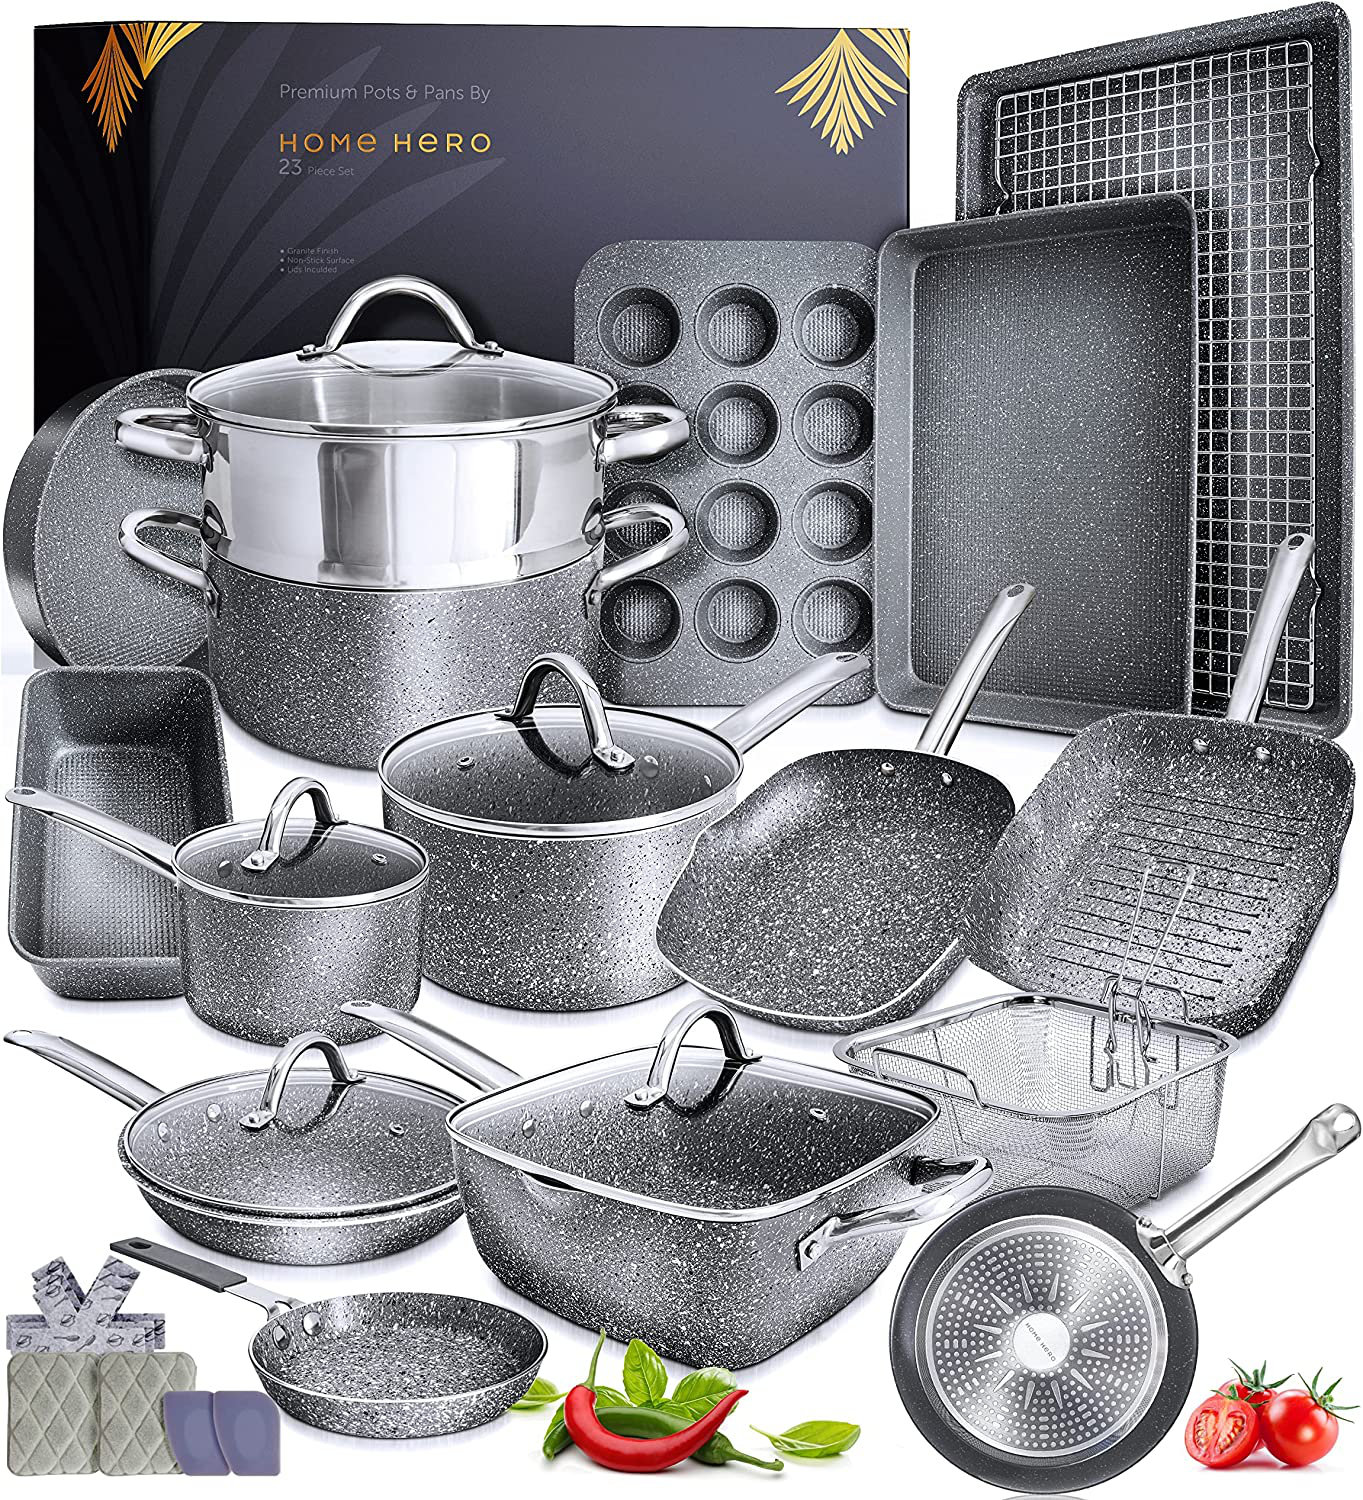 https://assets.wfcdn.com/im/14441640/compr-r85/2342/234297324/23-piece-non-stick-aluminum-cookware-set.jpg